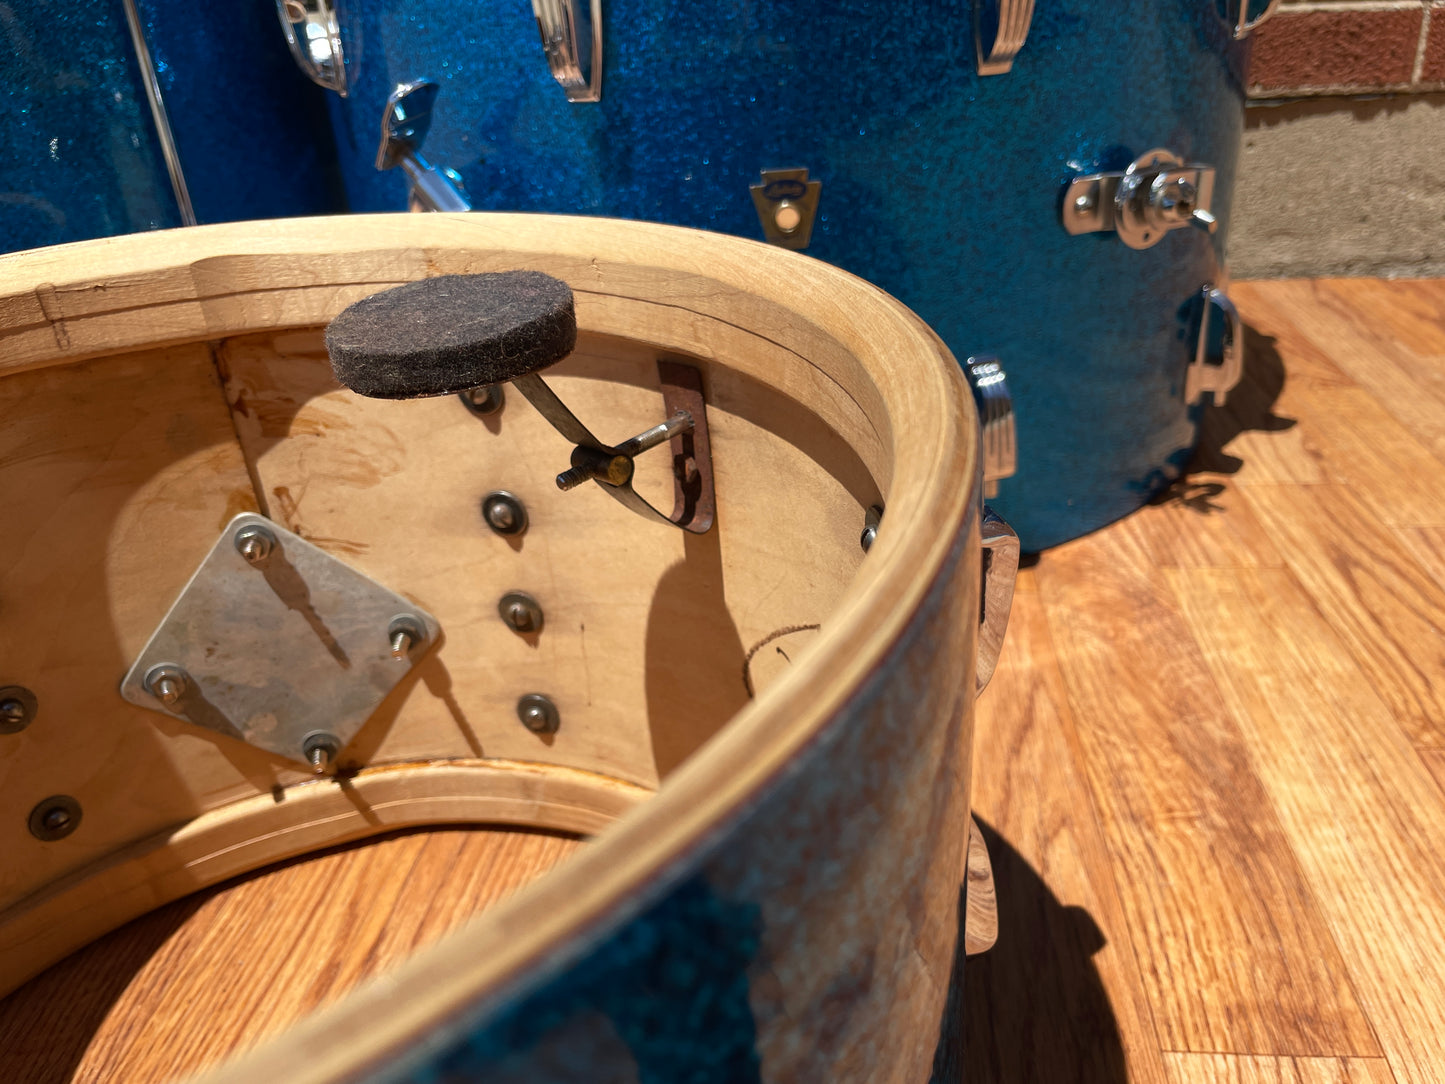 1959 Ludwig Super Classic Drum Set Blue Sparkle 22/13/16/5.5x14